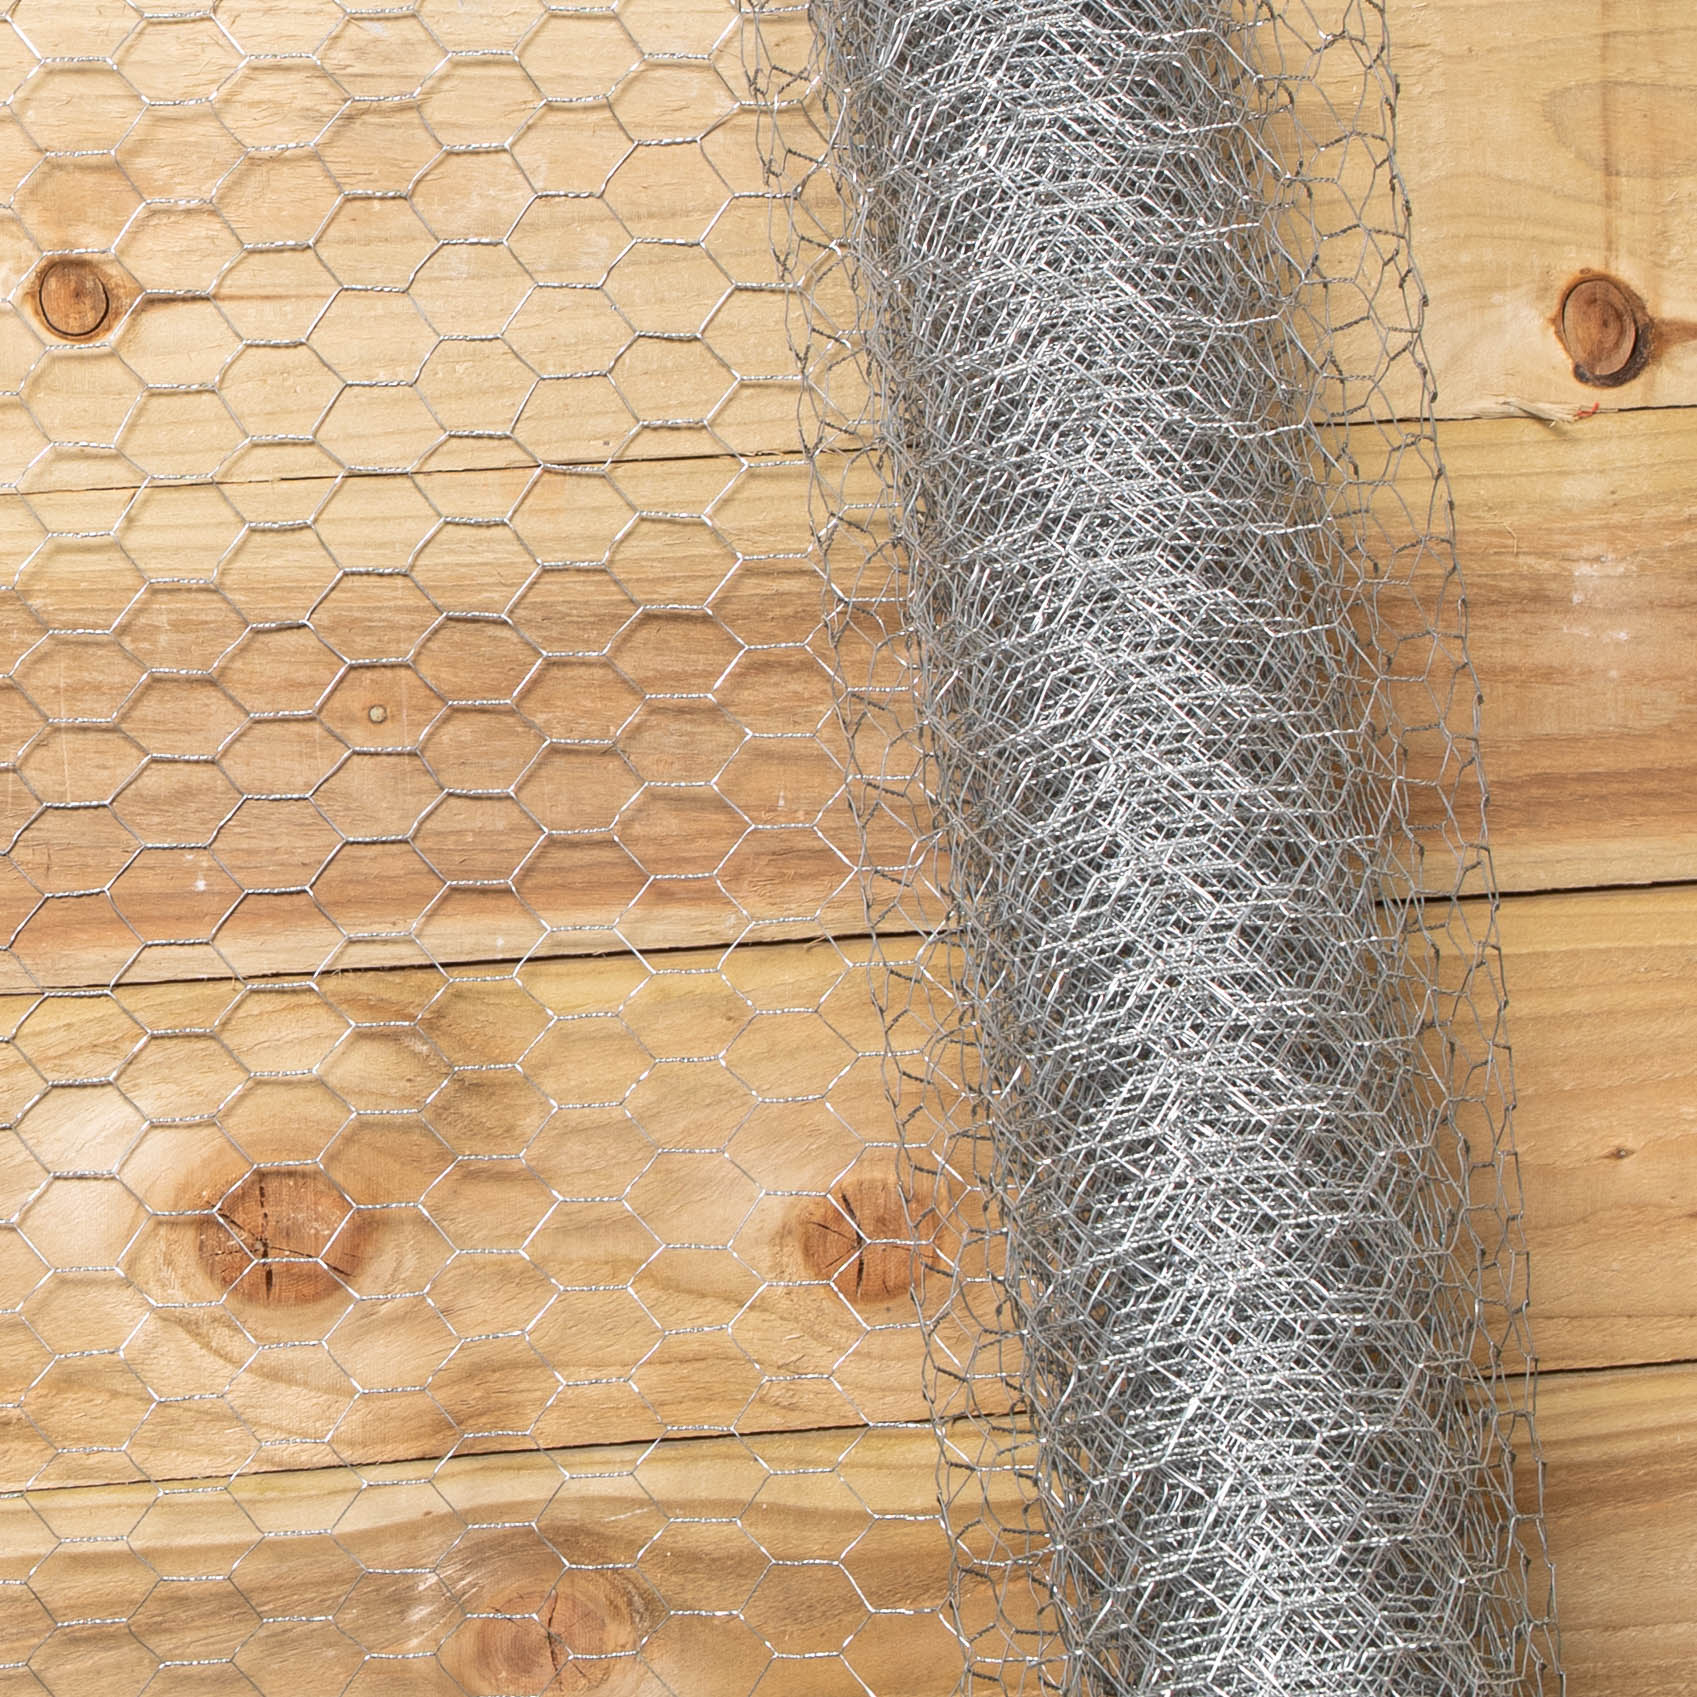 10m x 90cm x 25mm Galvanised Steel Chicken Garden Wire Netting / Fencing